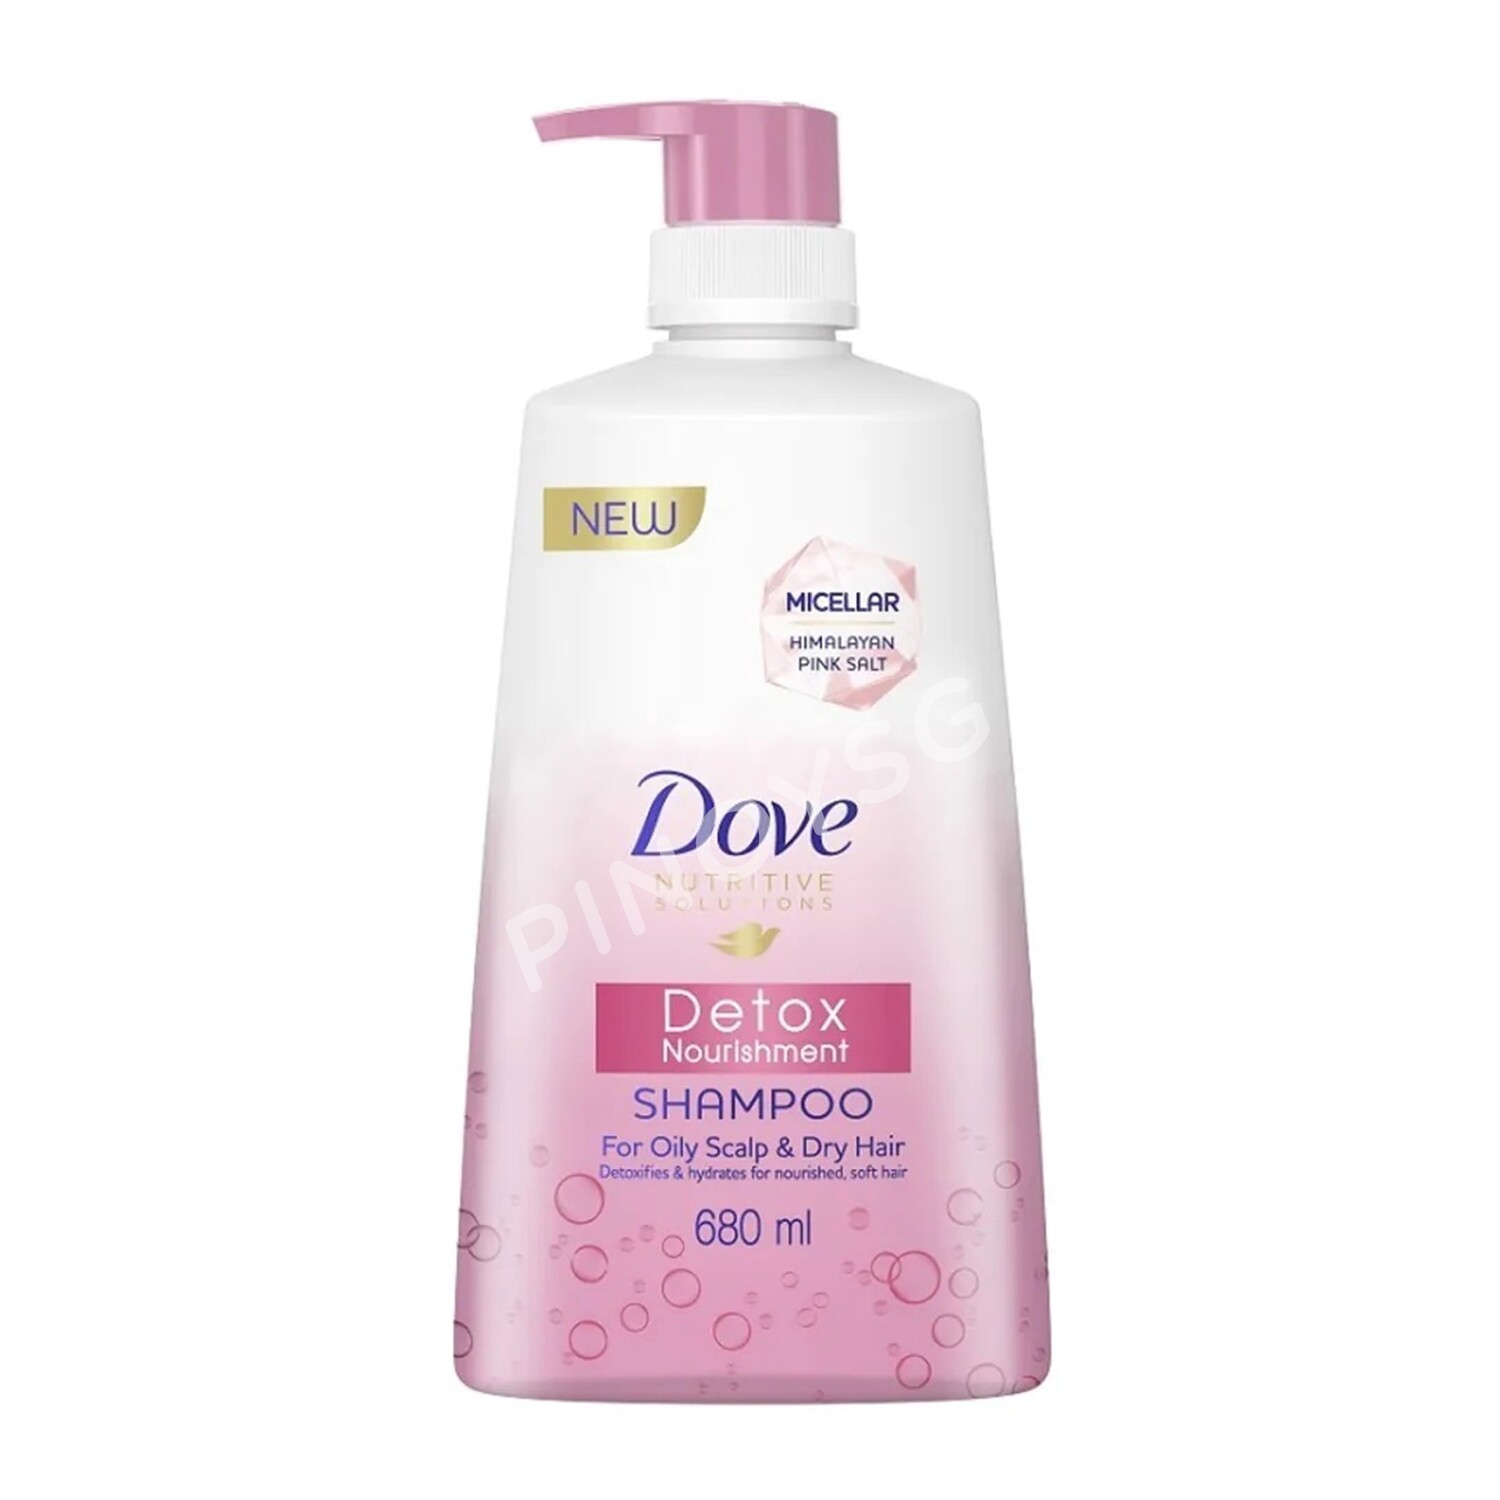 Dove Detox Nourishment Shampoo 680ml